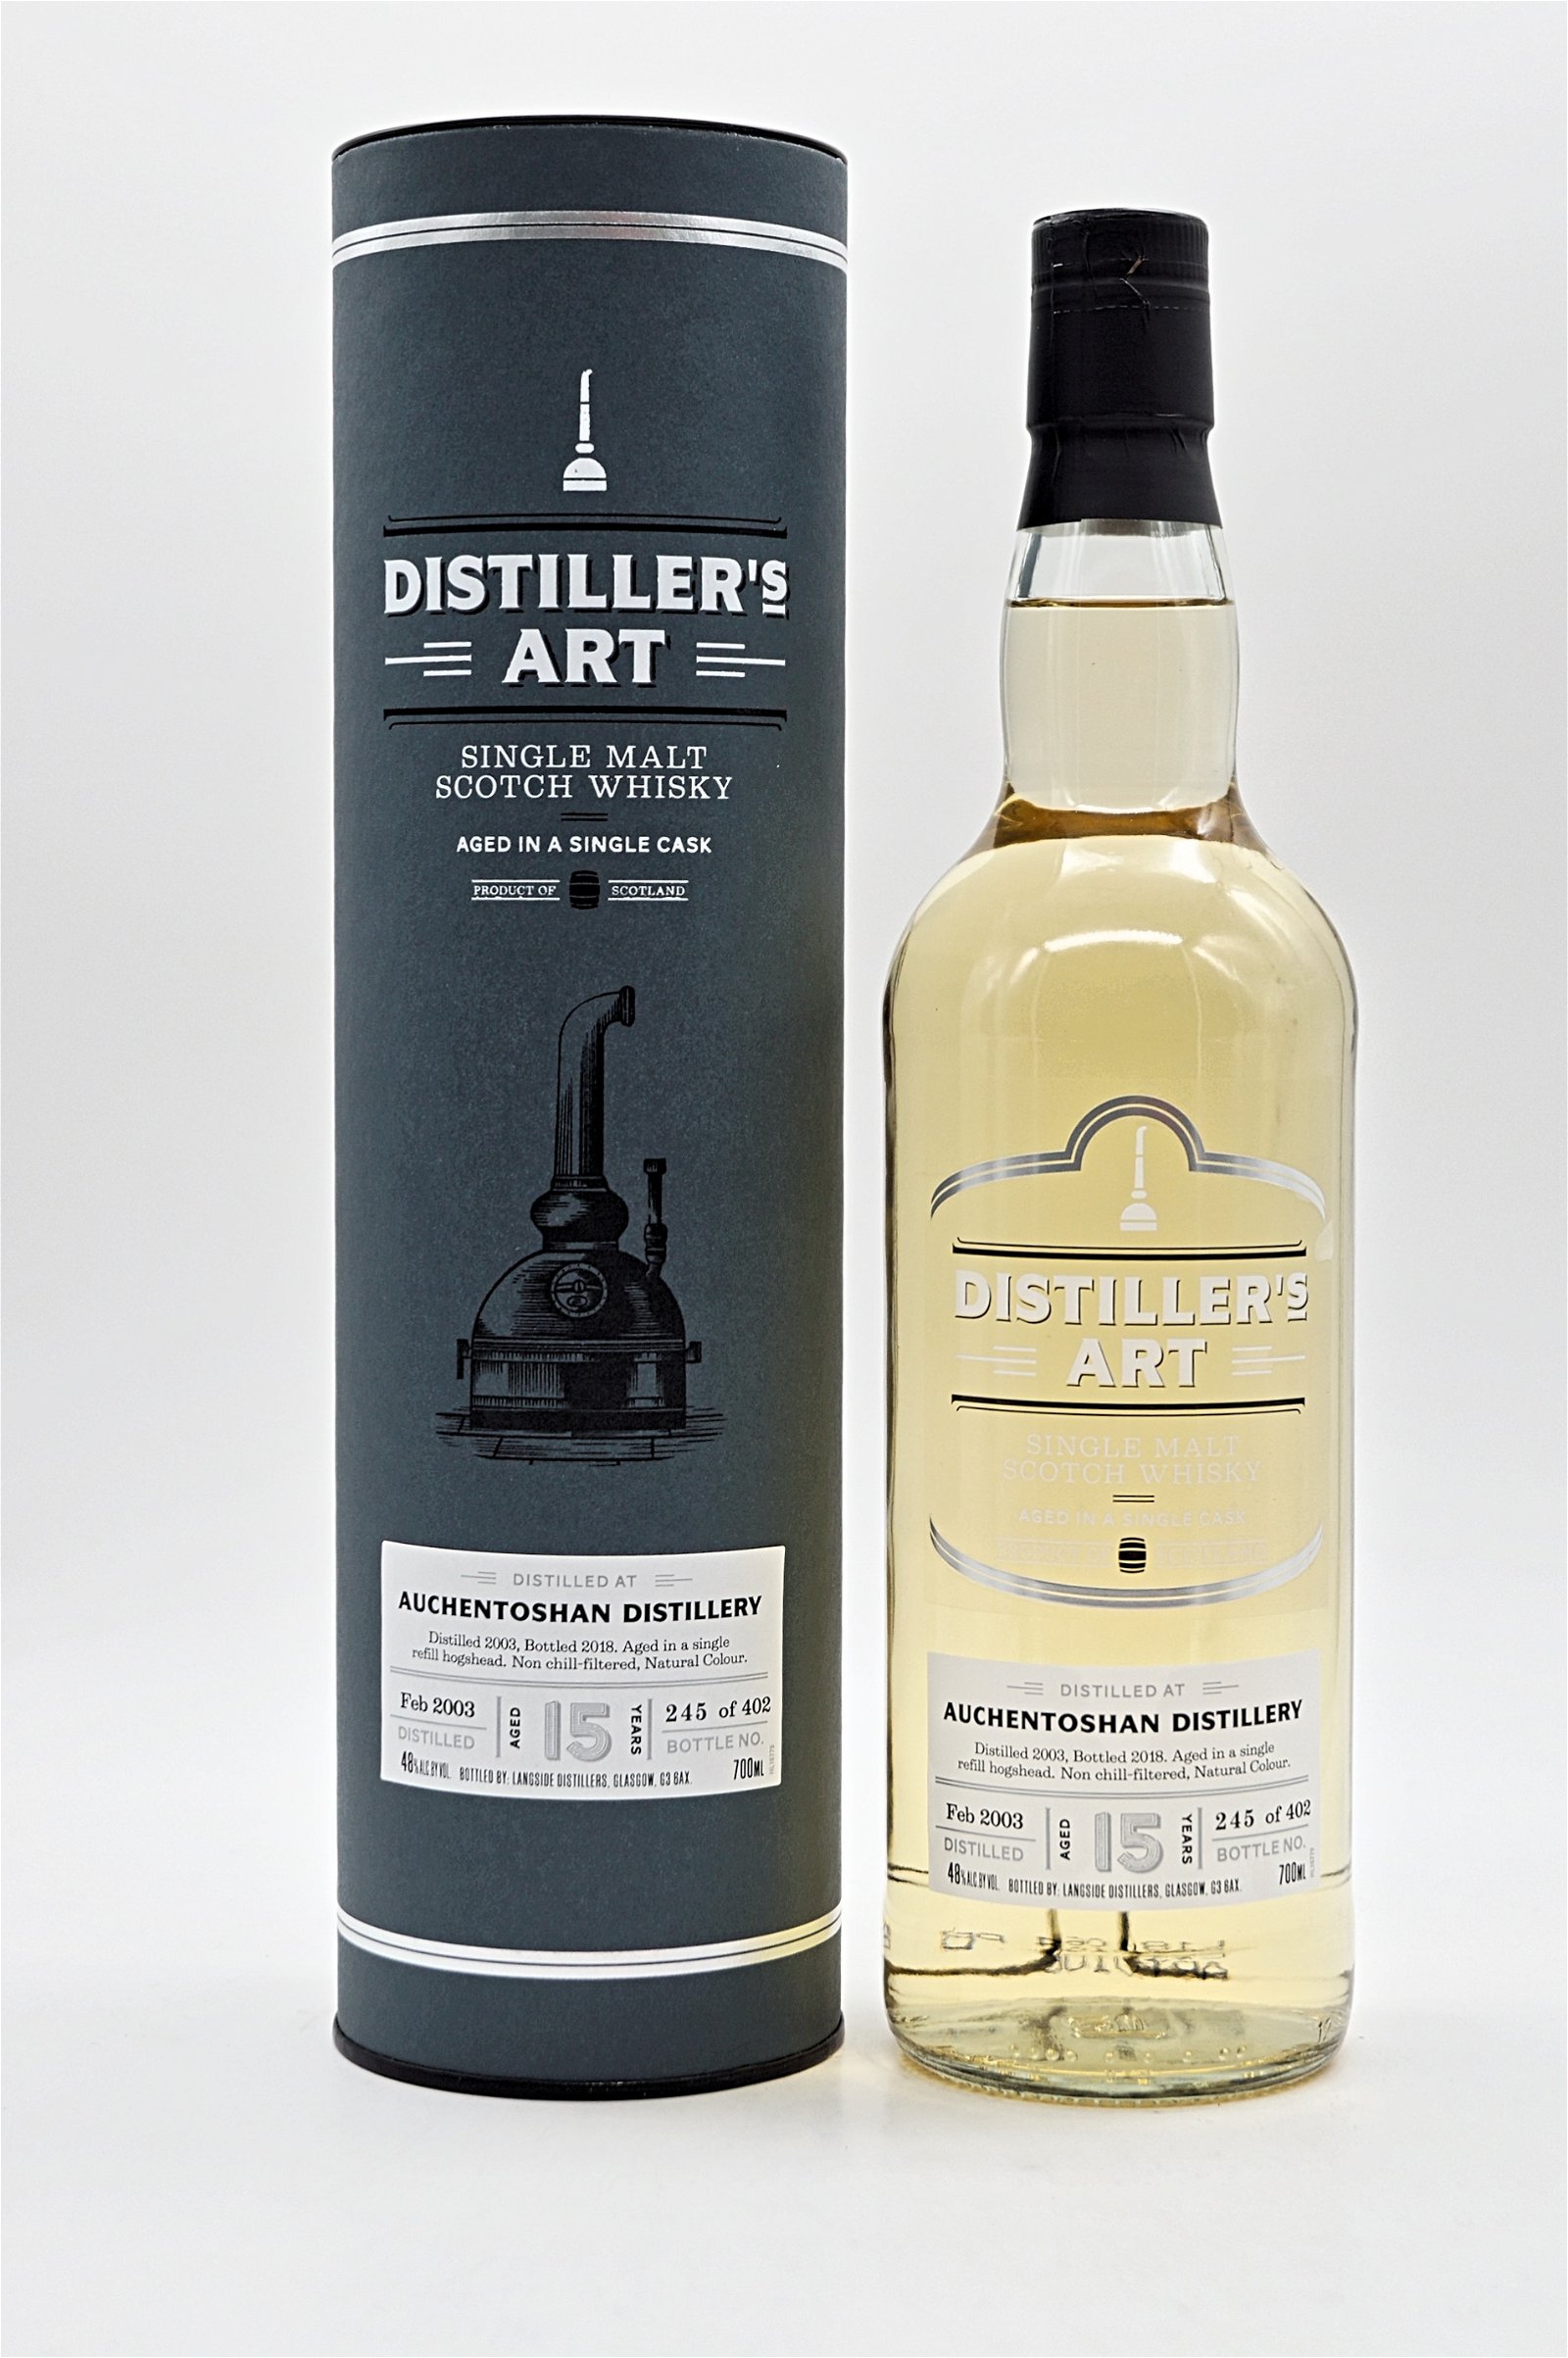 Distillers Art Auchentoshan Distillery 15 Jahre 48% 402 Fl. Single Cask Single Malt Scotch Whisky 